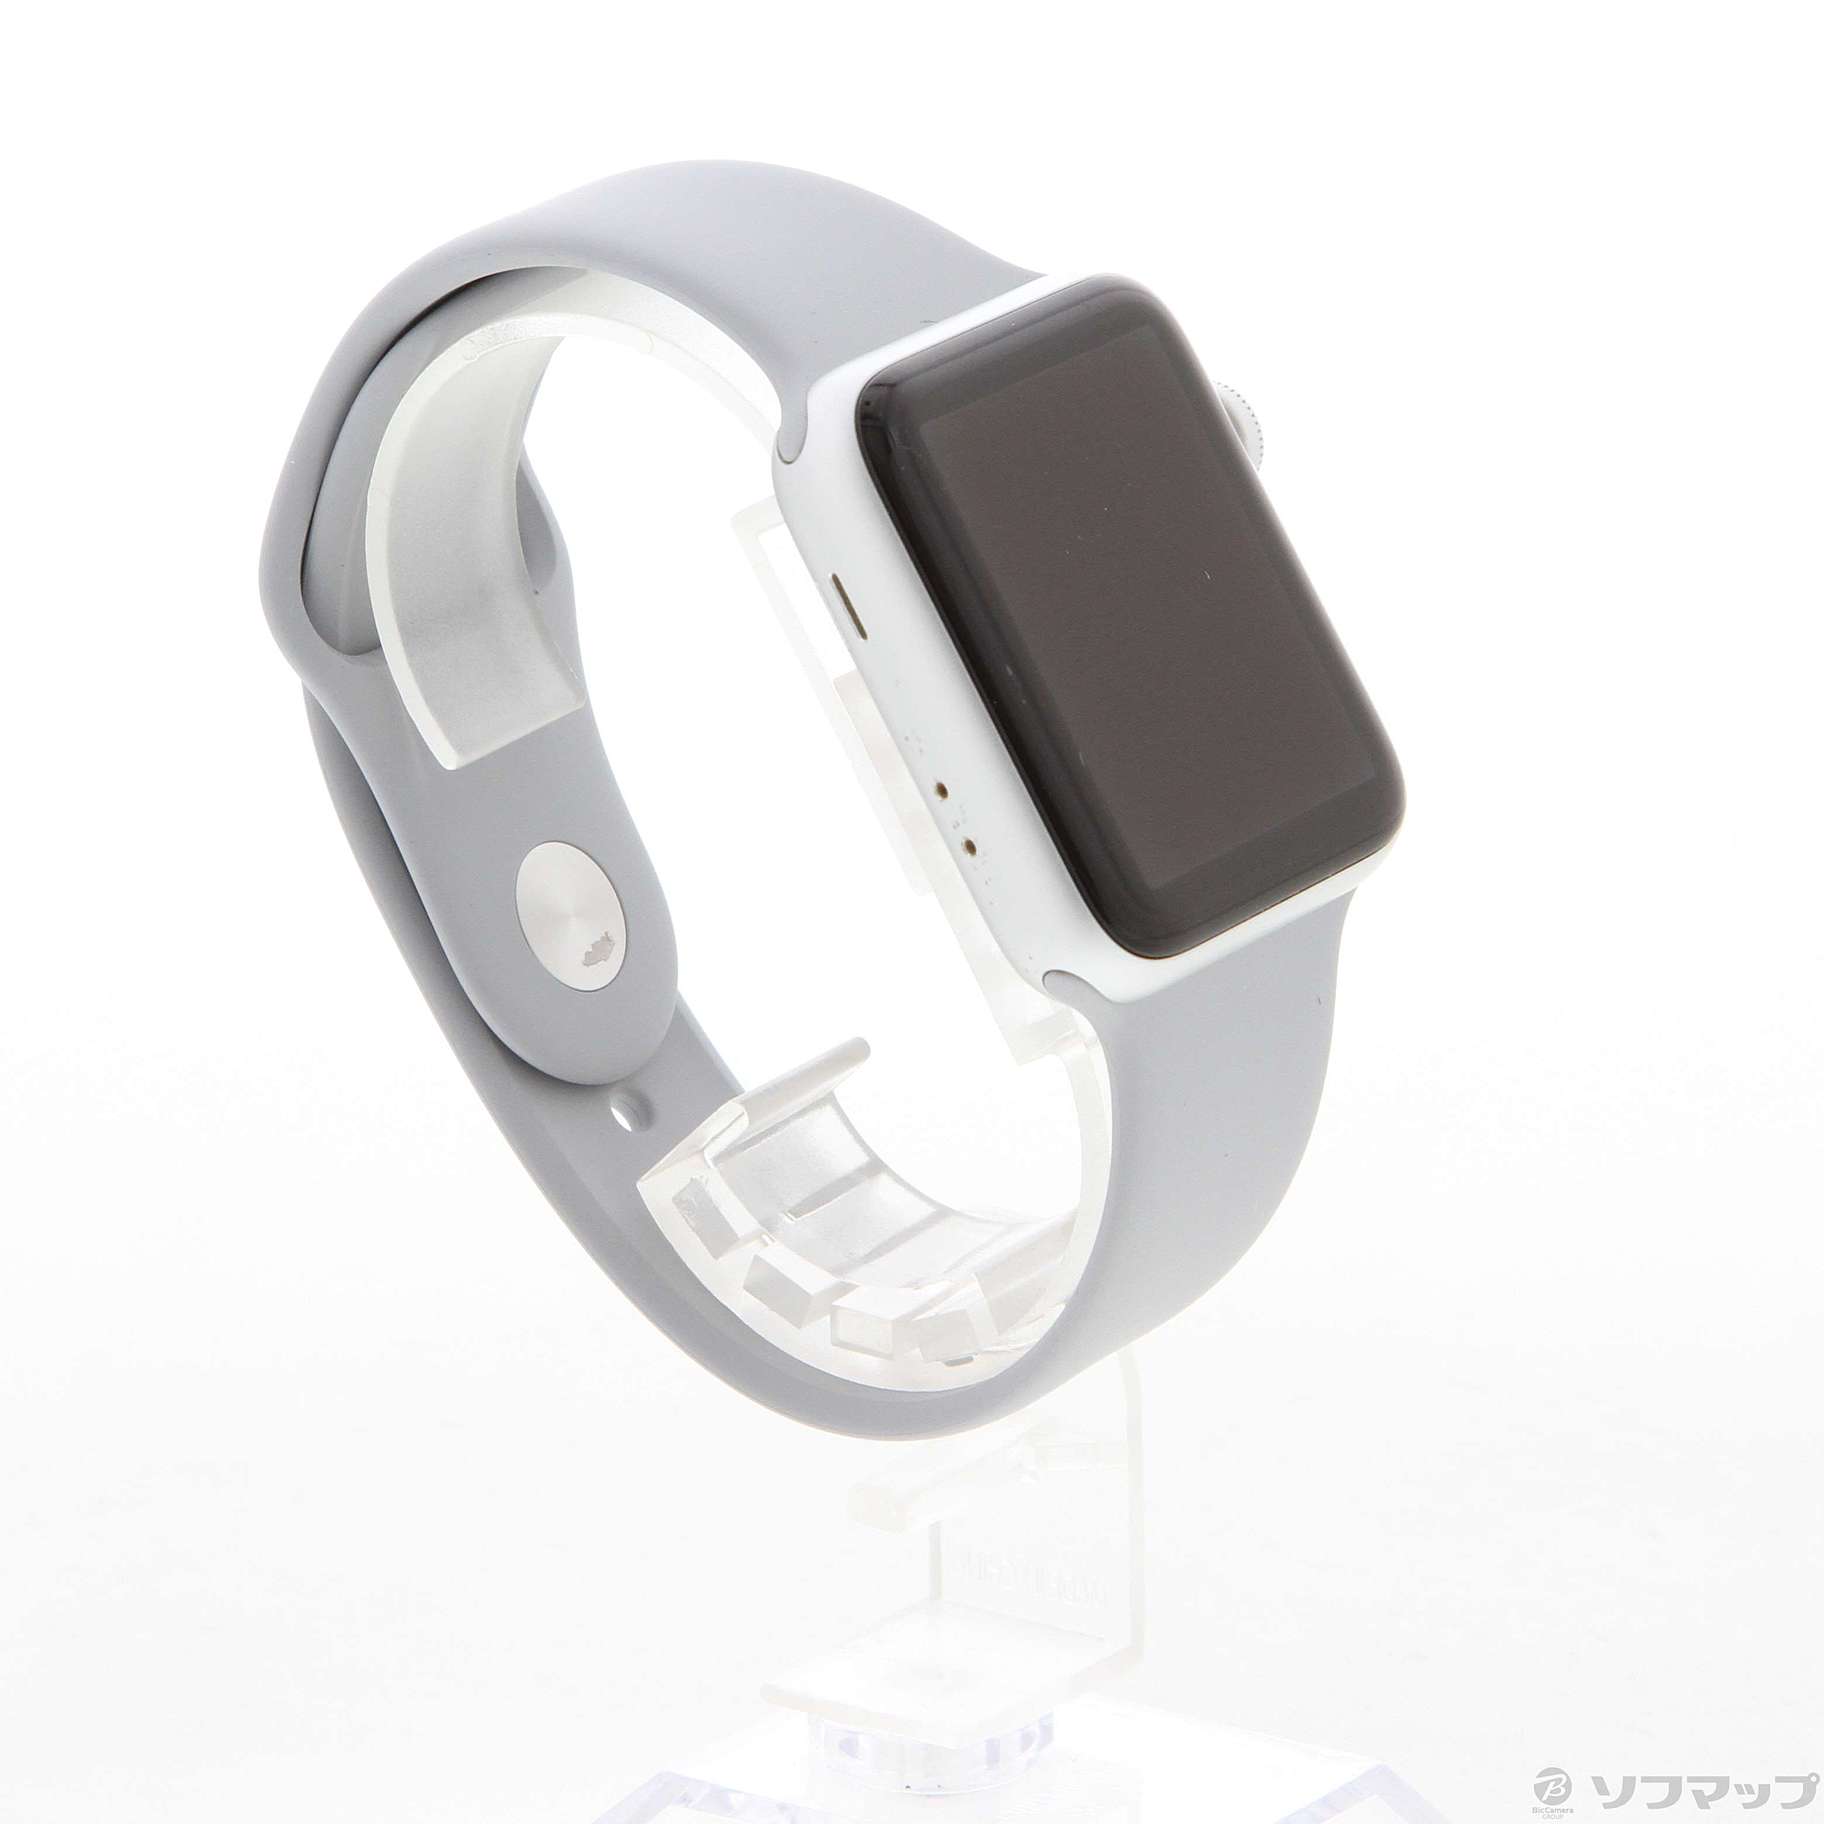 【質店】Apple Watch 3 GPS 42mm 本体+充電器+箱+ゴールドバンド iPhoneアクセサリー